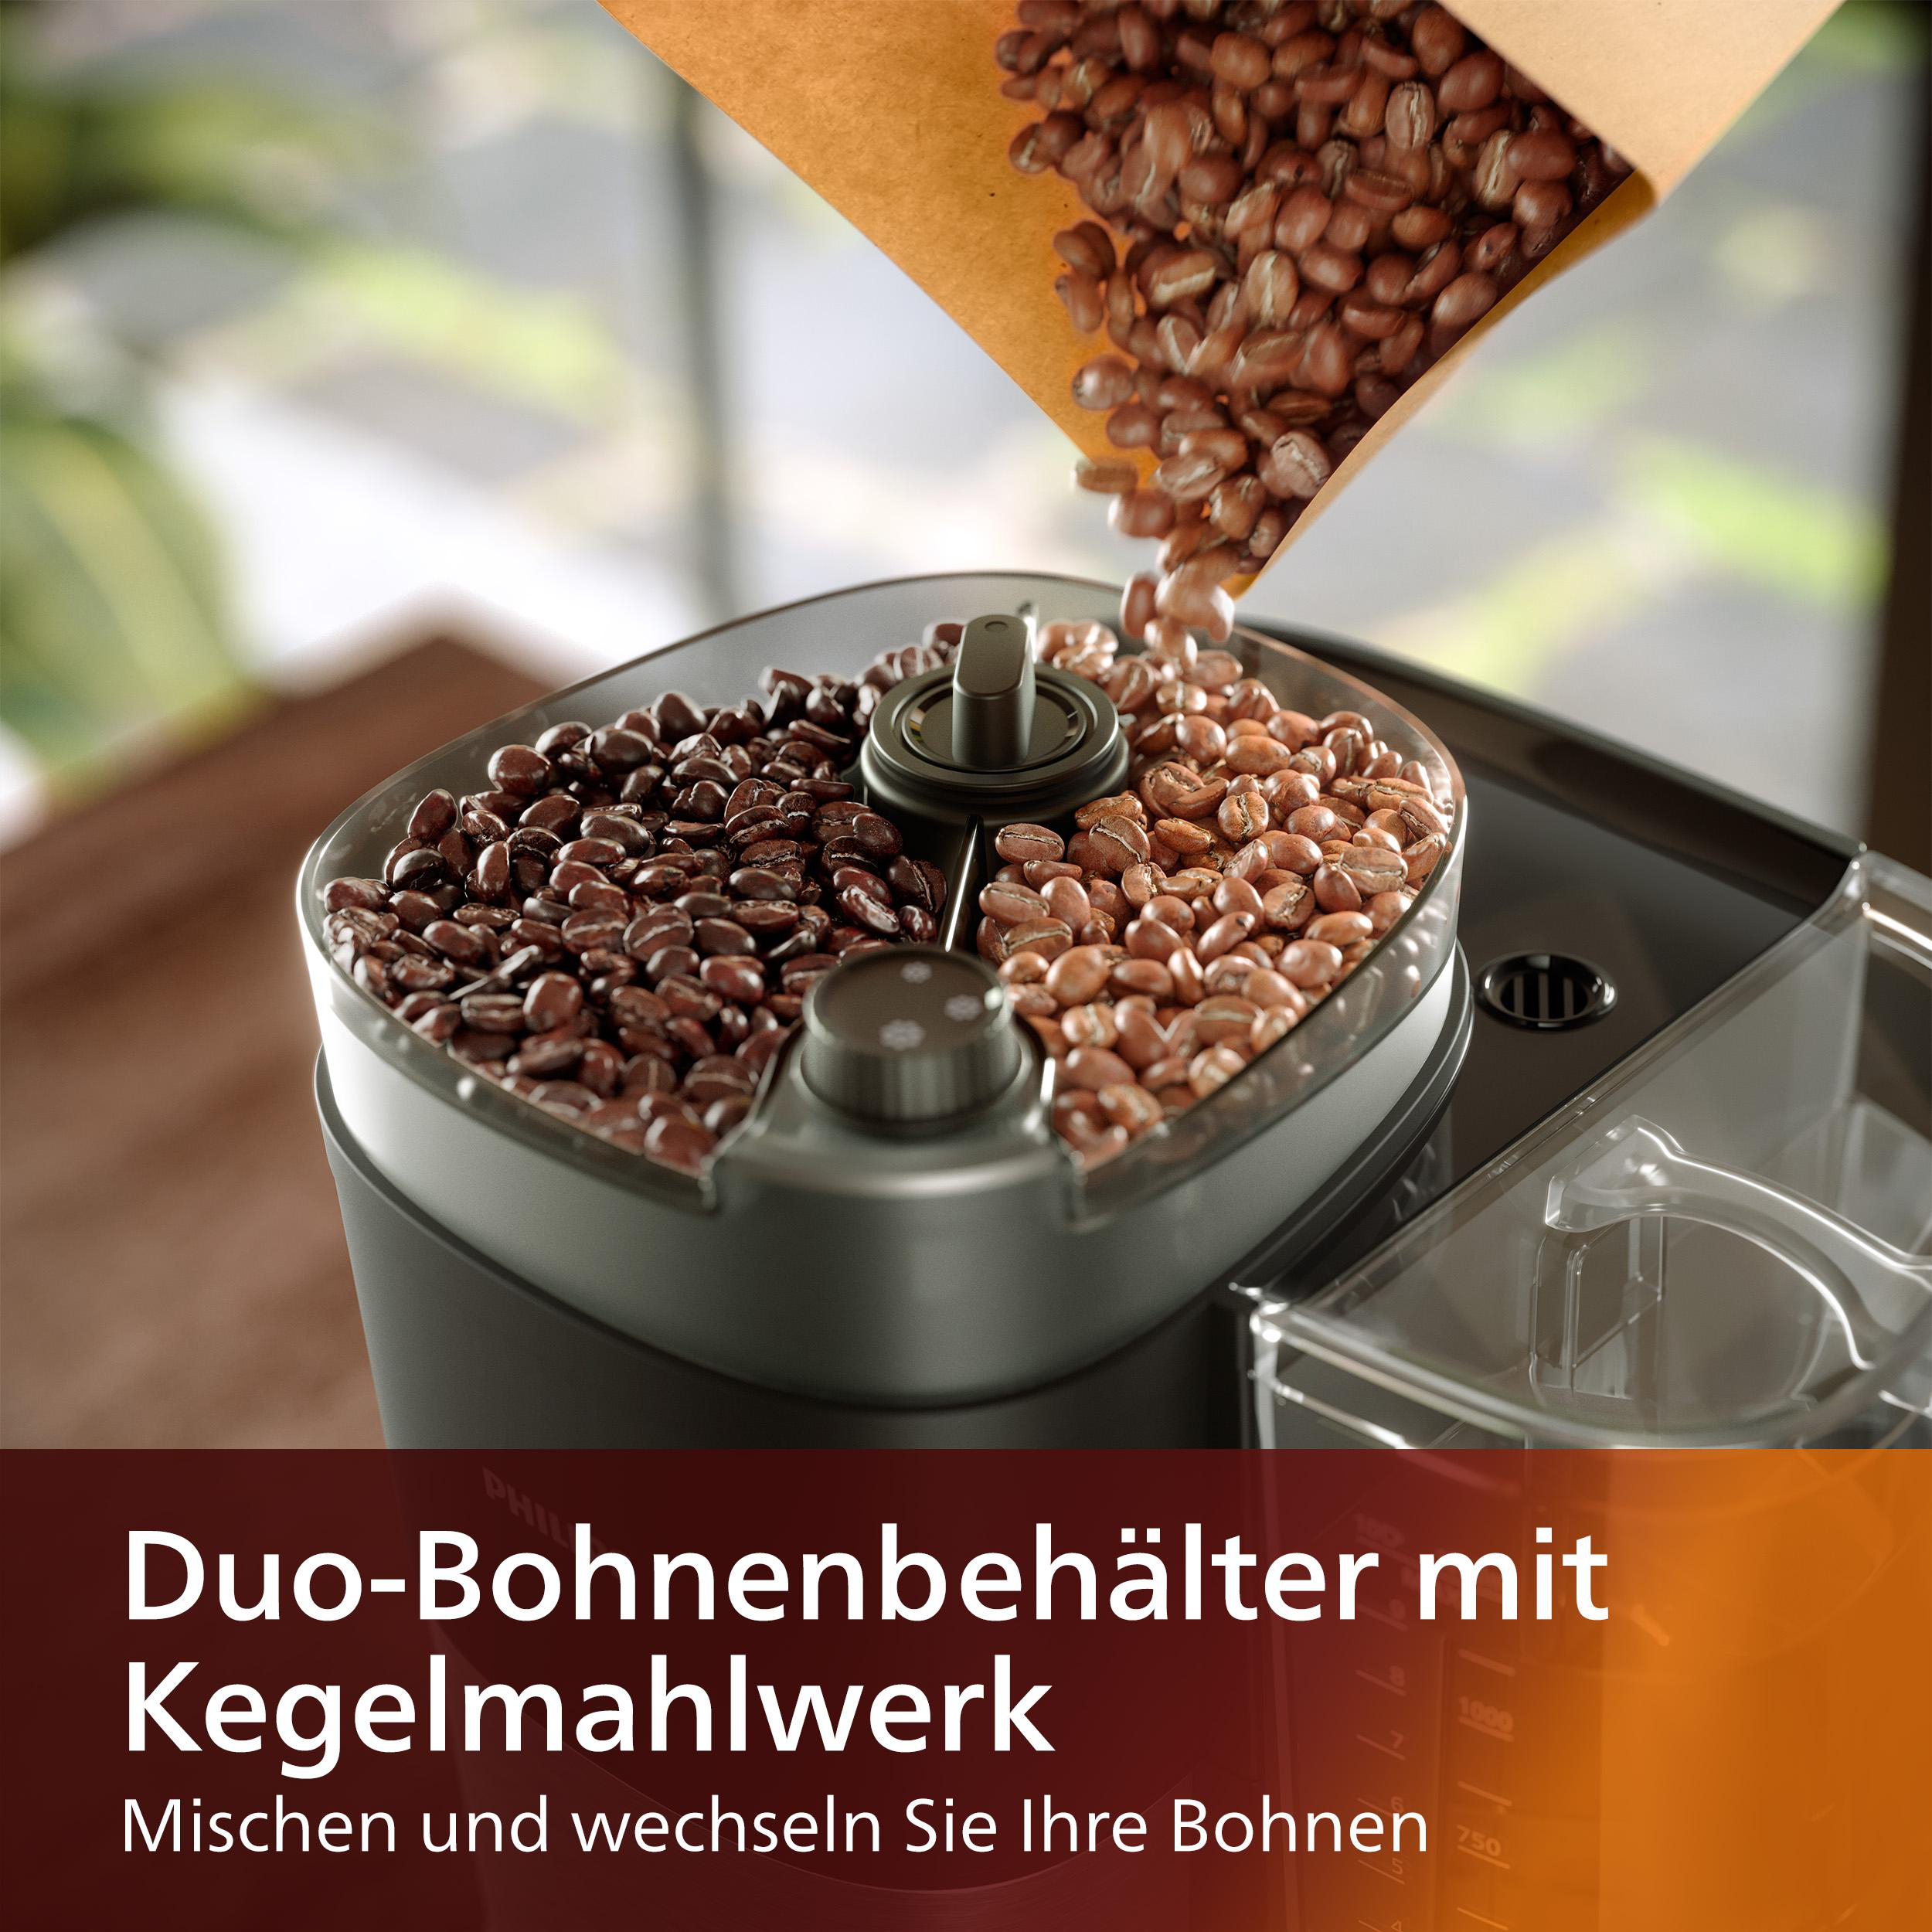 PHILIPS HD7900/50 All-in-1 Brew, mit Smart Dosierlöffel Dosierung Duo-Kaffeebohnenbehälter, Mahlwerk, und inkl. Permanentfilter Schwarz/Silber und Kaffeemaschine